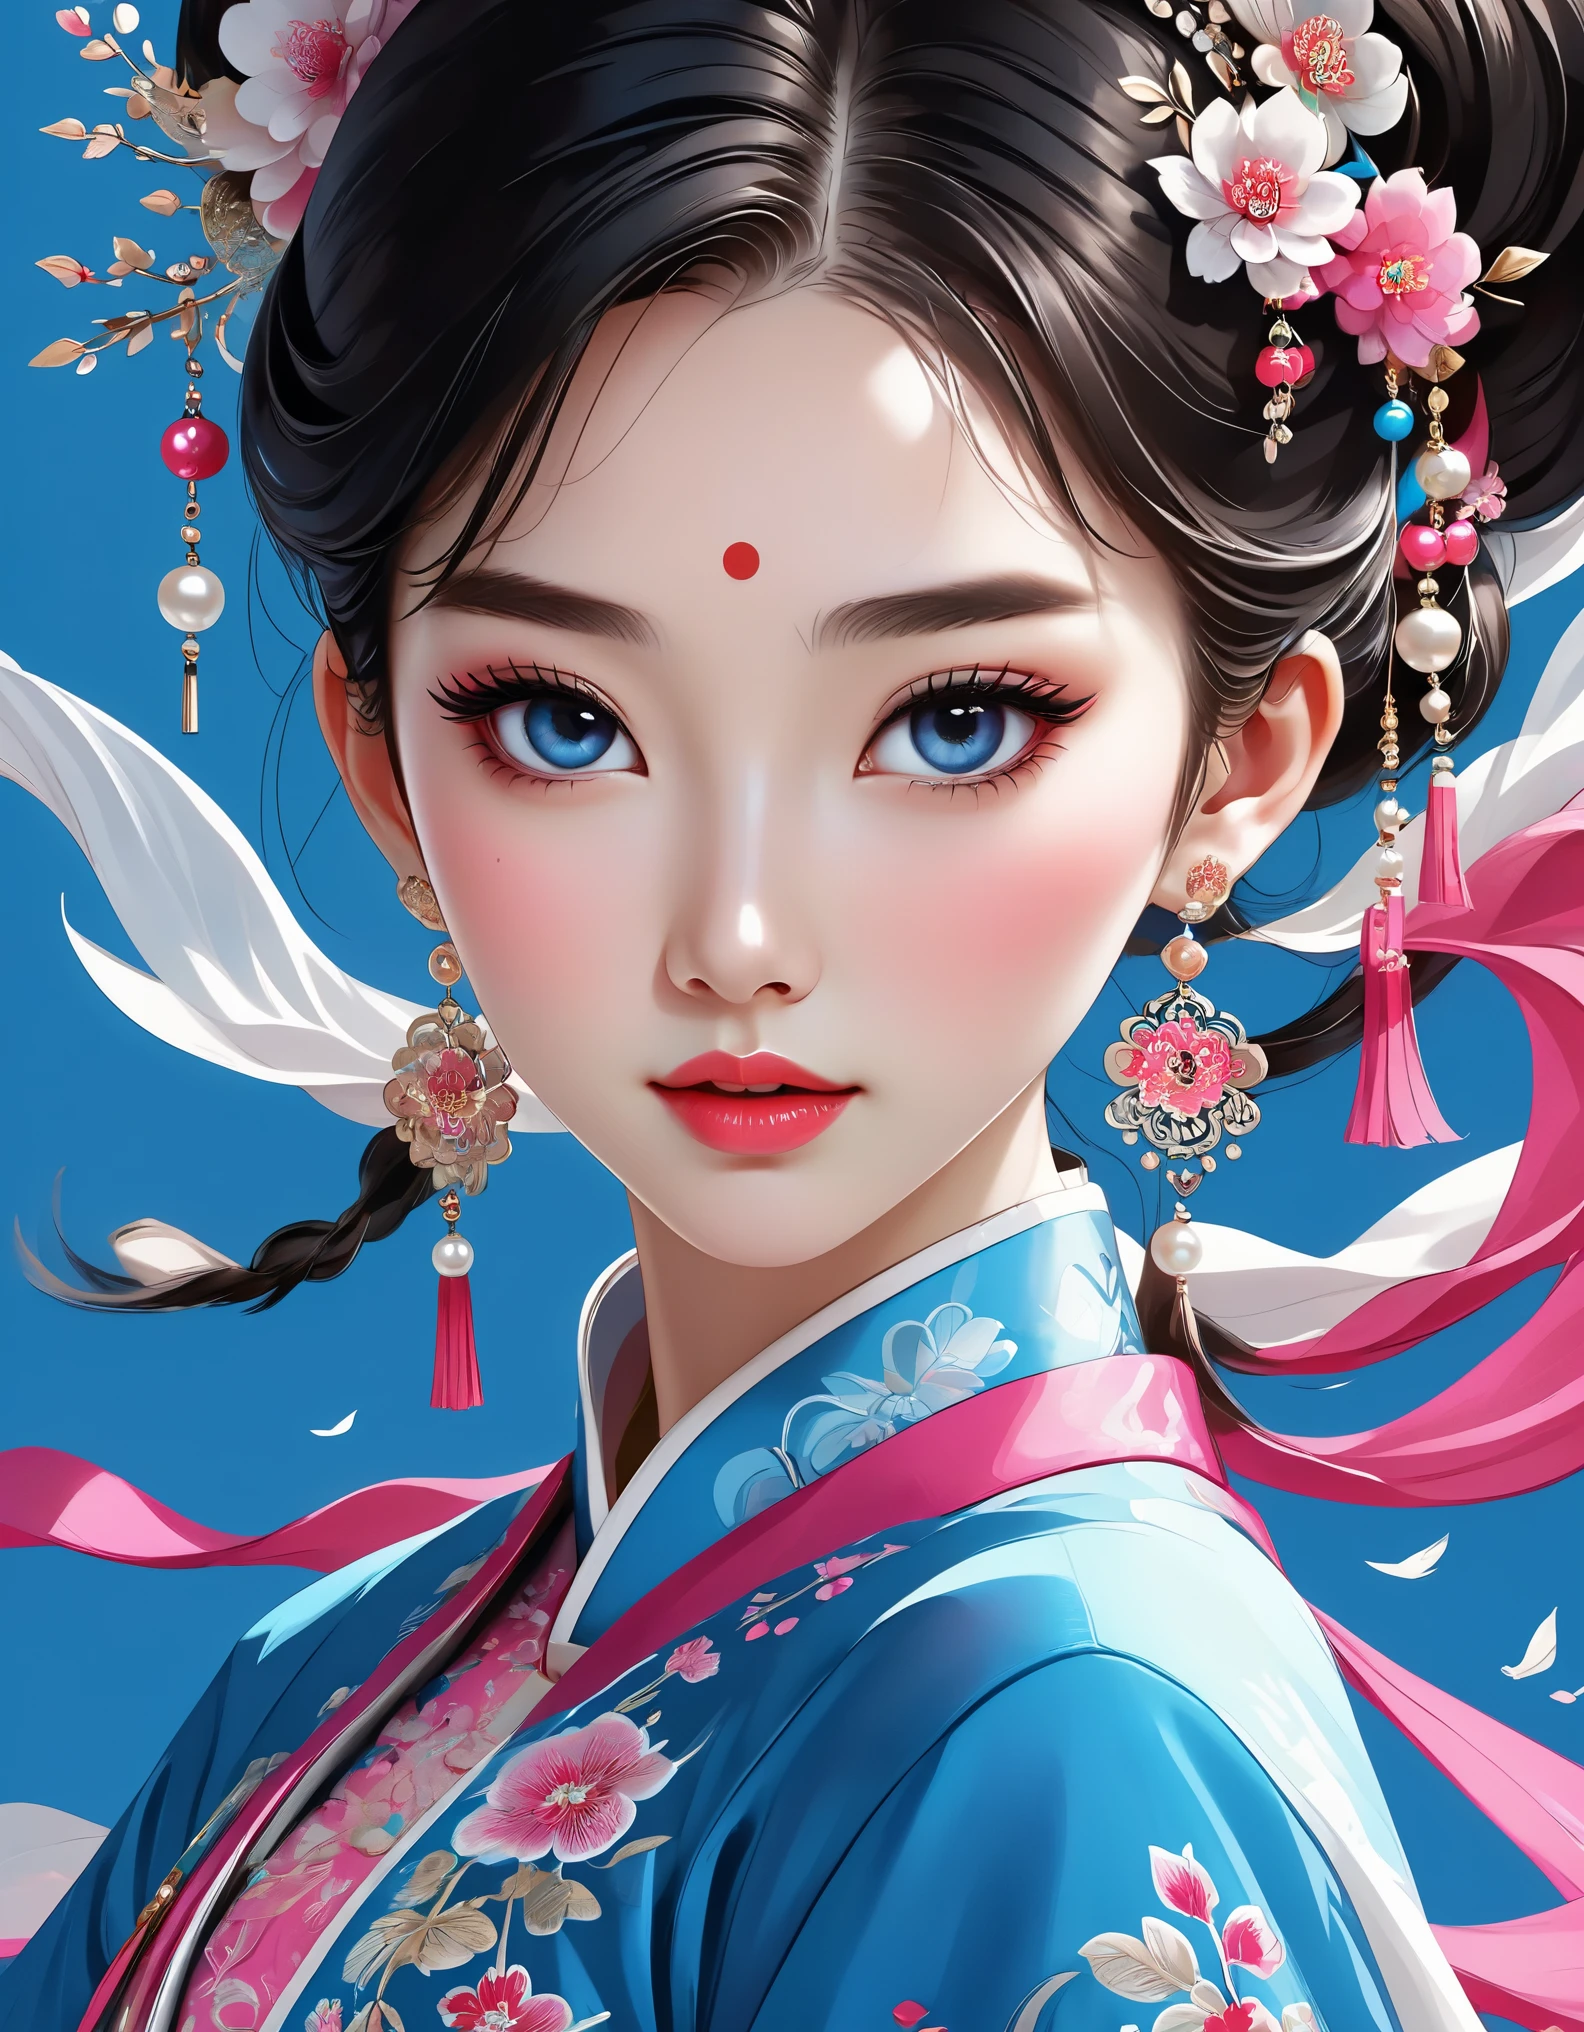 아름다운 중국 소녀의 얼굴을 휘날리는 베일이 덮고 있다, 진주 귀걸이, 긴 속눈썹과 분홍빛 입술, 얼굴 클로즈업, 깨끗한 얼굴, 둥근 턱, 파란 눈, 자수가 들어간 파란색 한복, 흰 바탕.
그래픽 일러스트레이션, 3D 렌더링, 밝은 색상과 섬세한 디테일, 일러스트 포스터로, 2D 게임 아트 스타일, 색상 보정, HD, 32,000 ,사적인